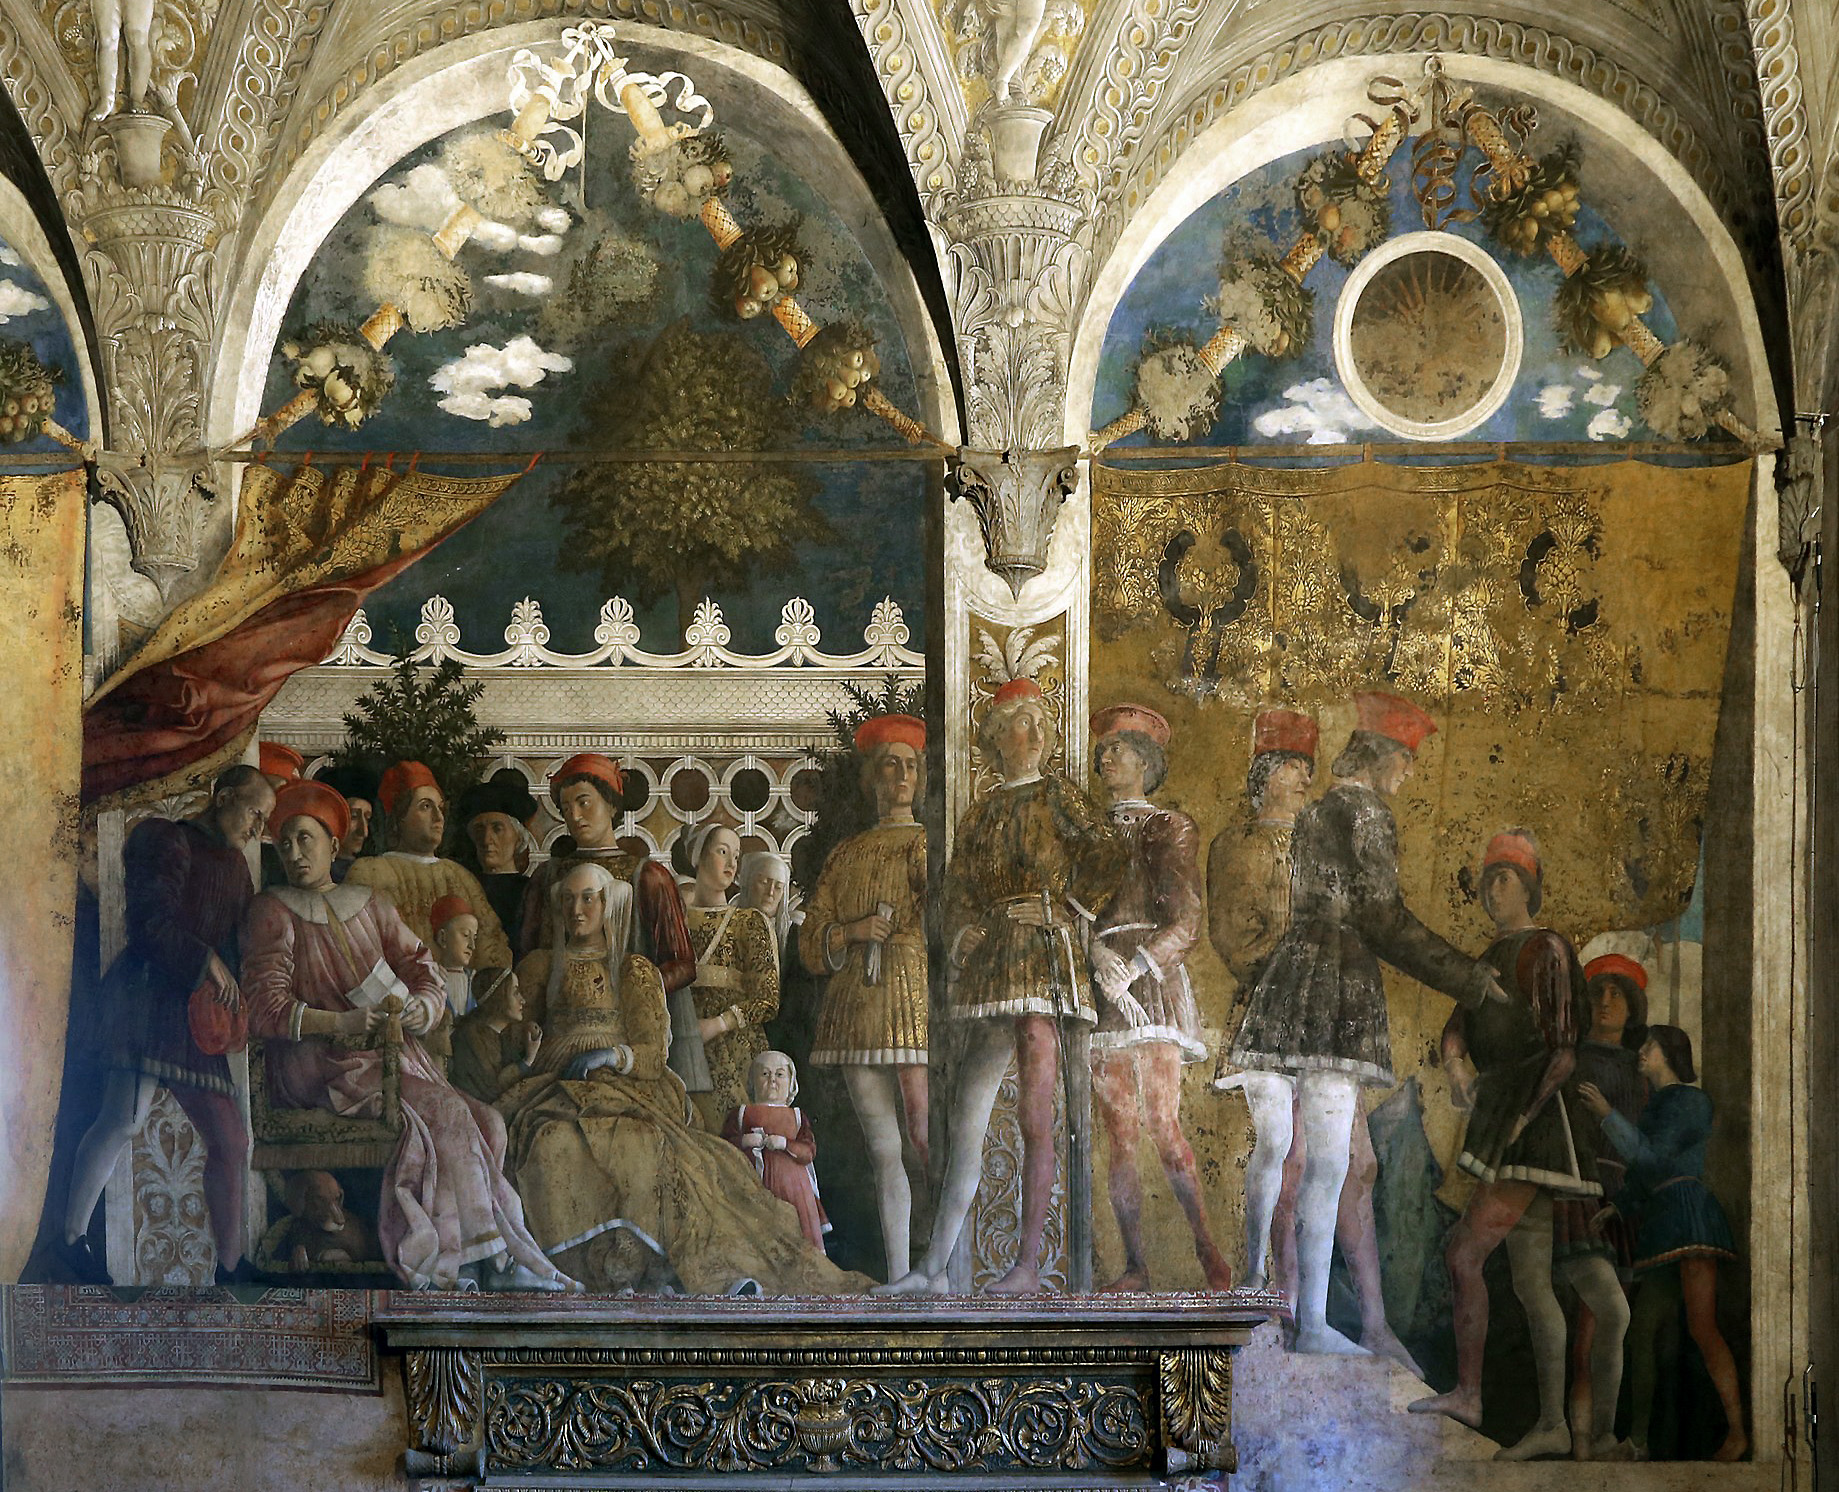 https://smarthistory.org/wp-content/uploads/2022/10/Andrea_mantegna_camera_degli_sposi_1465-74_parete_nord_detta_della_corte_01.jpg